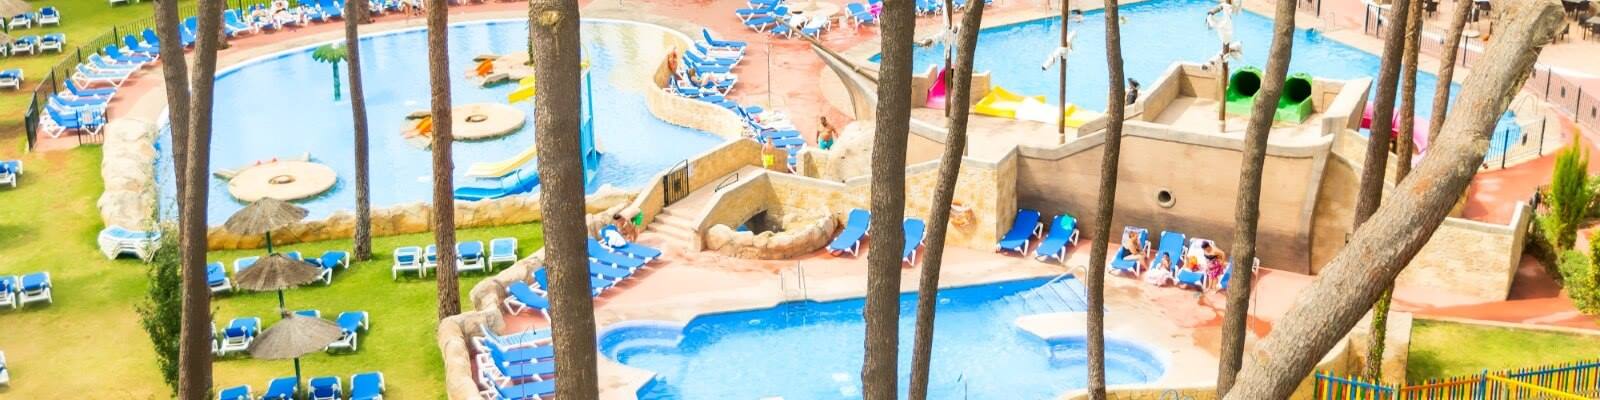 Oferta Hotel Aluasun Marbella Park con toboganes en Marbella Todo Incluido para verano 2023 (Marbella - MALAGA)